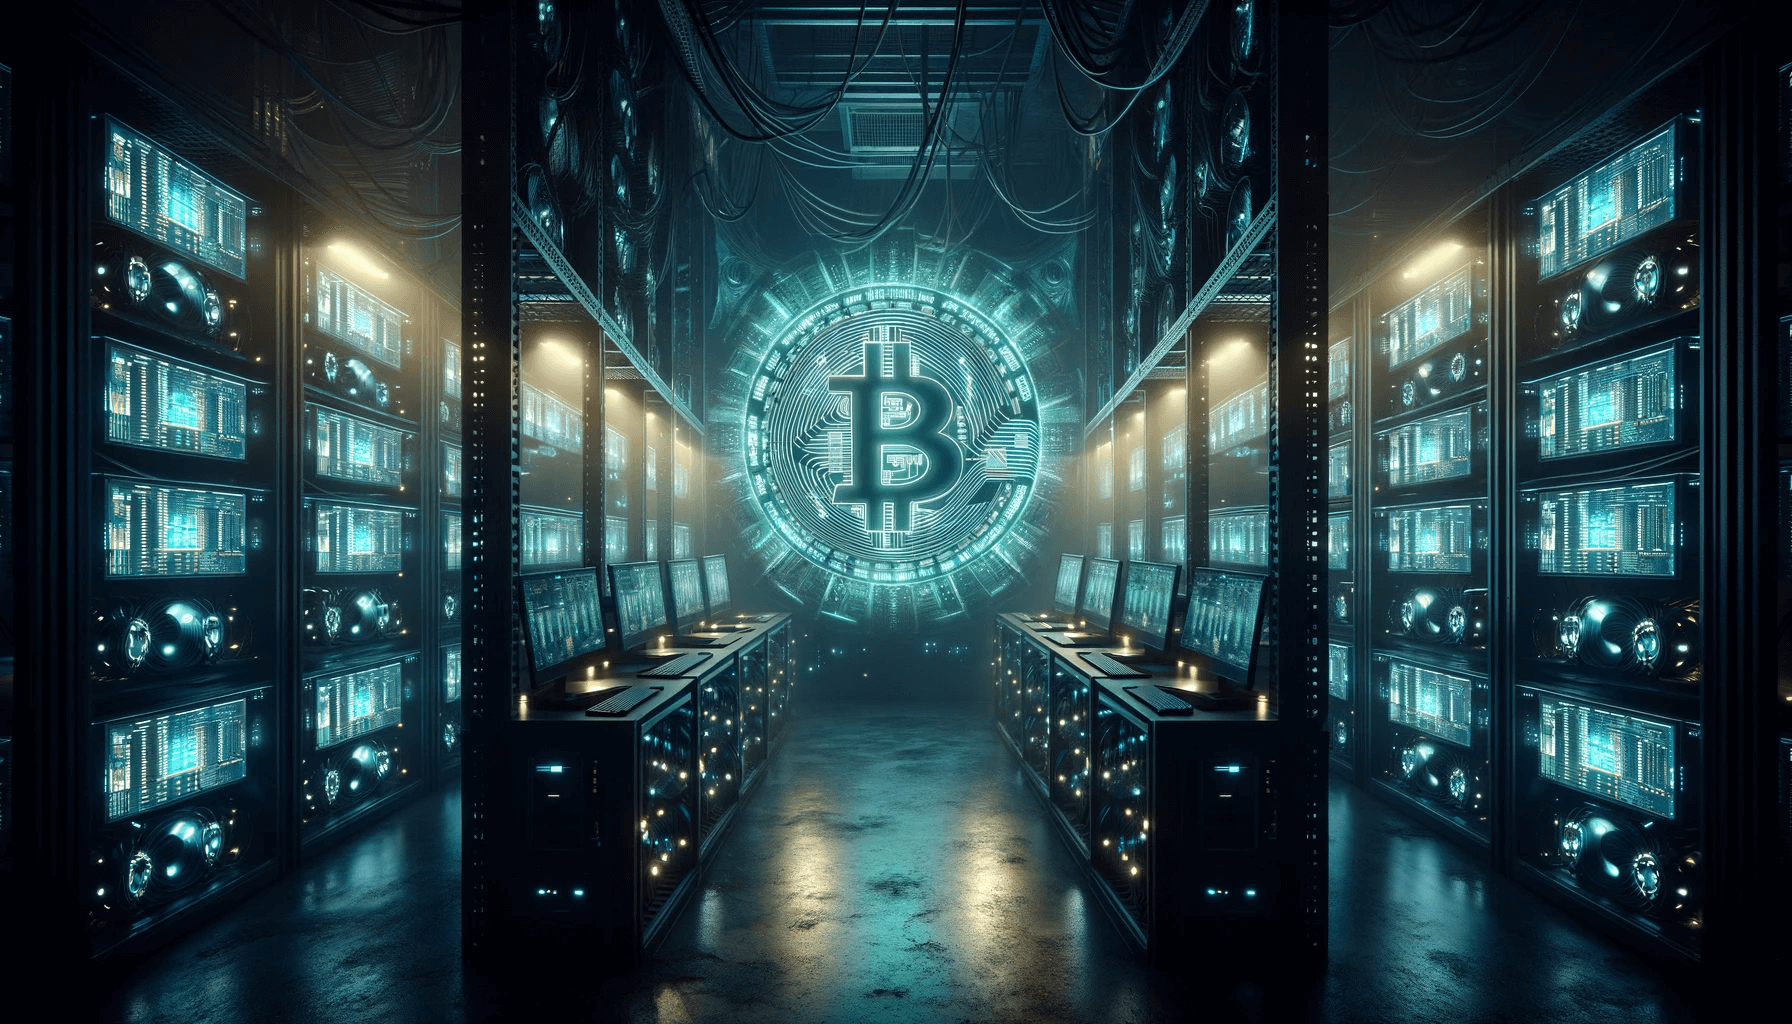 Scene med Bitcoin mining rig i sentrum. Bildet viser et svakt opplyst datasenter med rader av kraftige Bitcoin-utvinningsrigger.